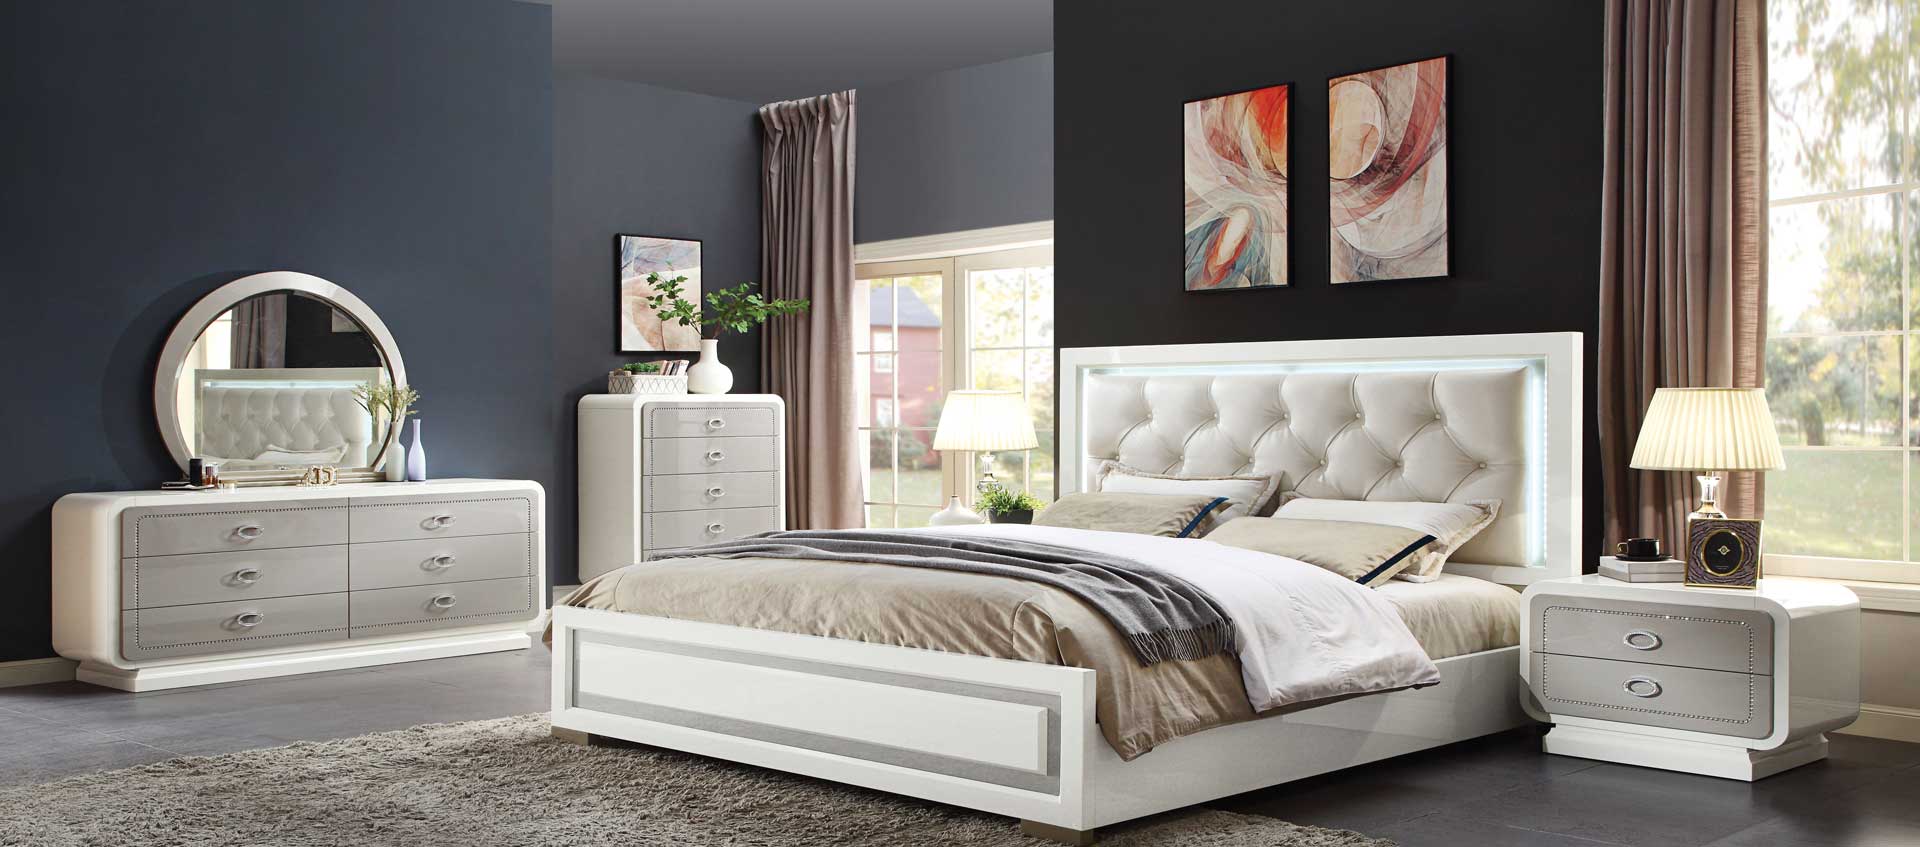 bedroom furniture stores dunellen